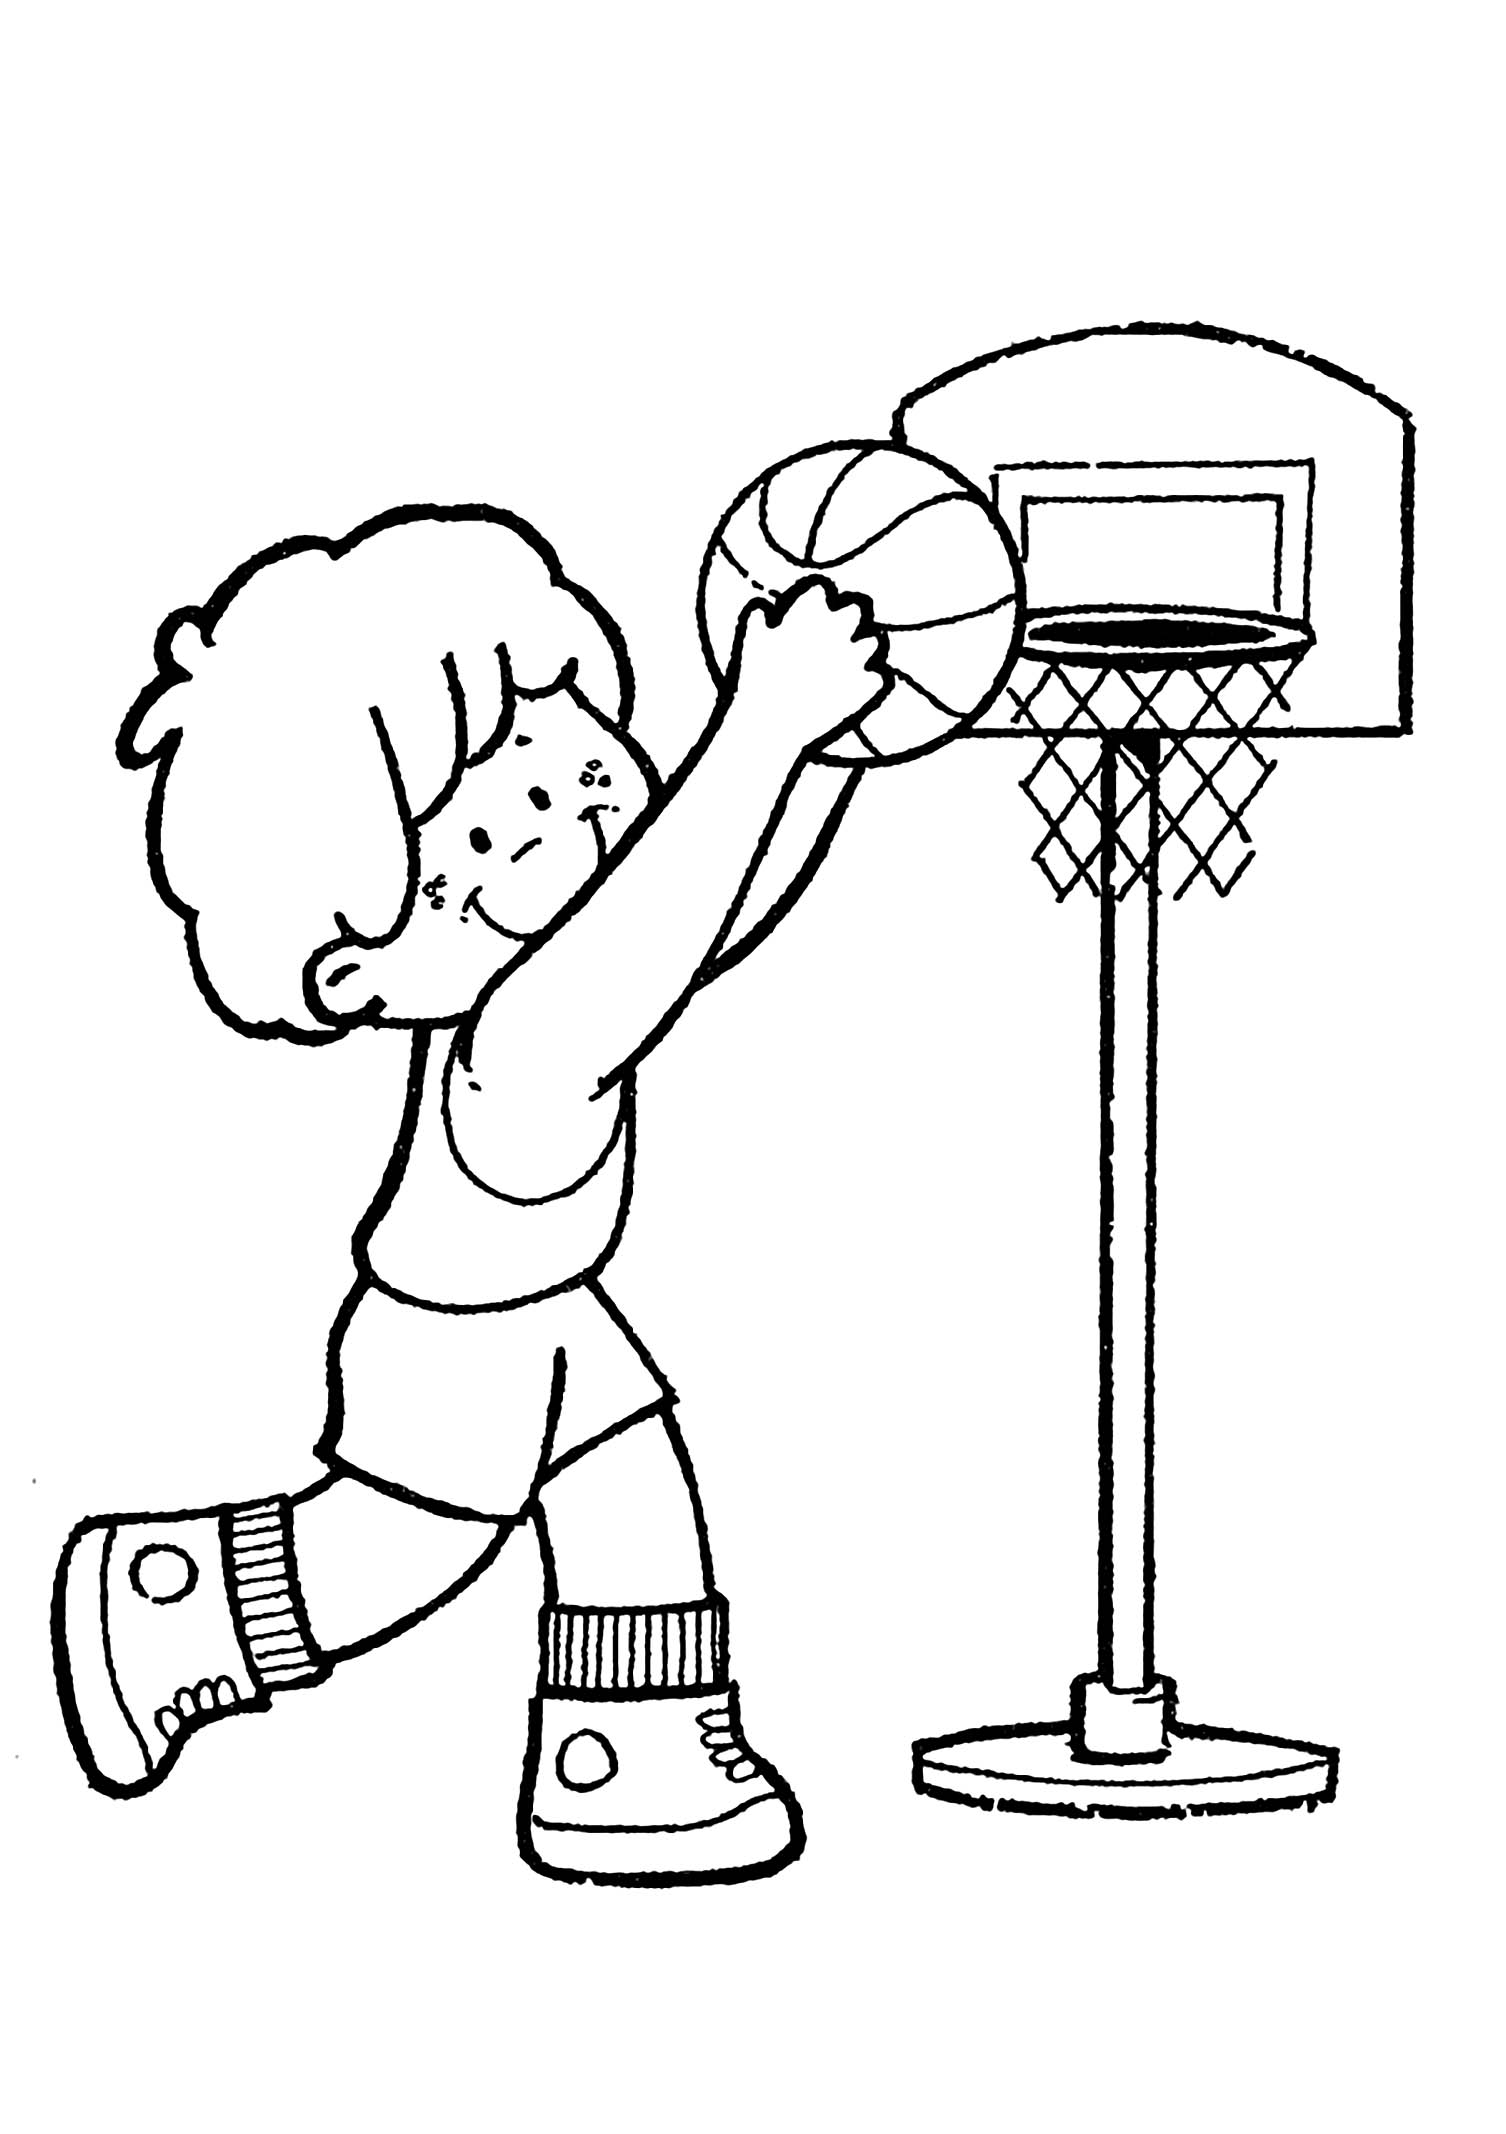 Préparez vos crayons et feutres pour colorier ce coloriage de basketball